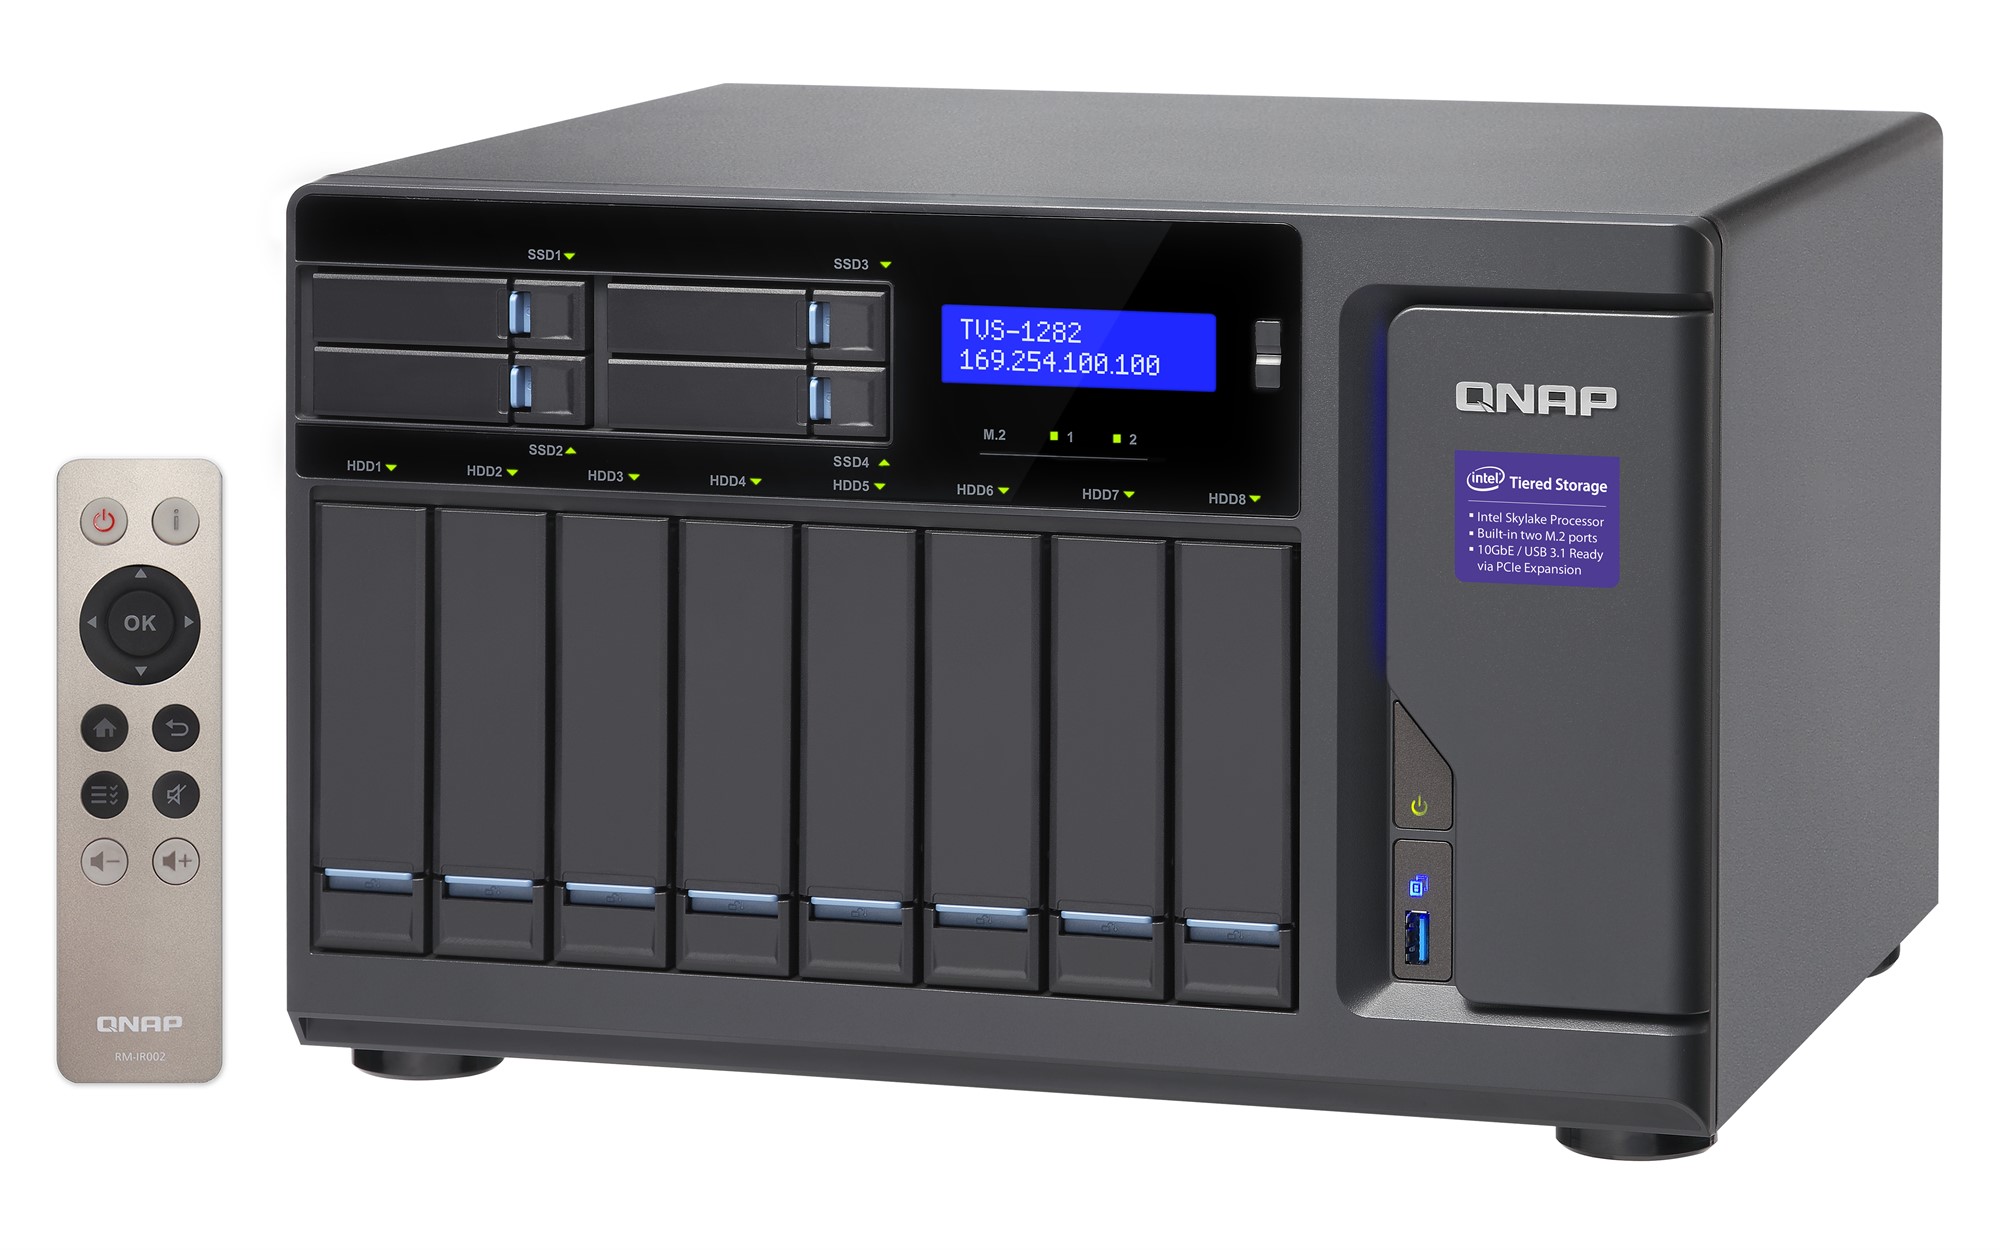 Сетевой RAID-накопитель QNAP 12 отсеков для HDD. Четырехъядерный Intel Core i7-6700 3,4 ГГц, 32 ГБ DDR4 RAM. TVS-1282-I7-32G TVS-1282-I7-32G #4